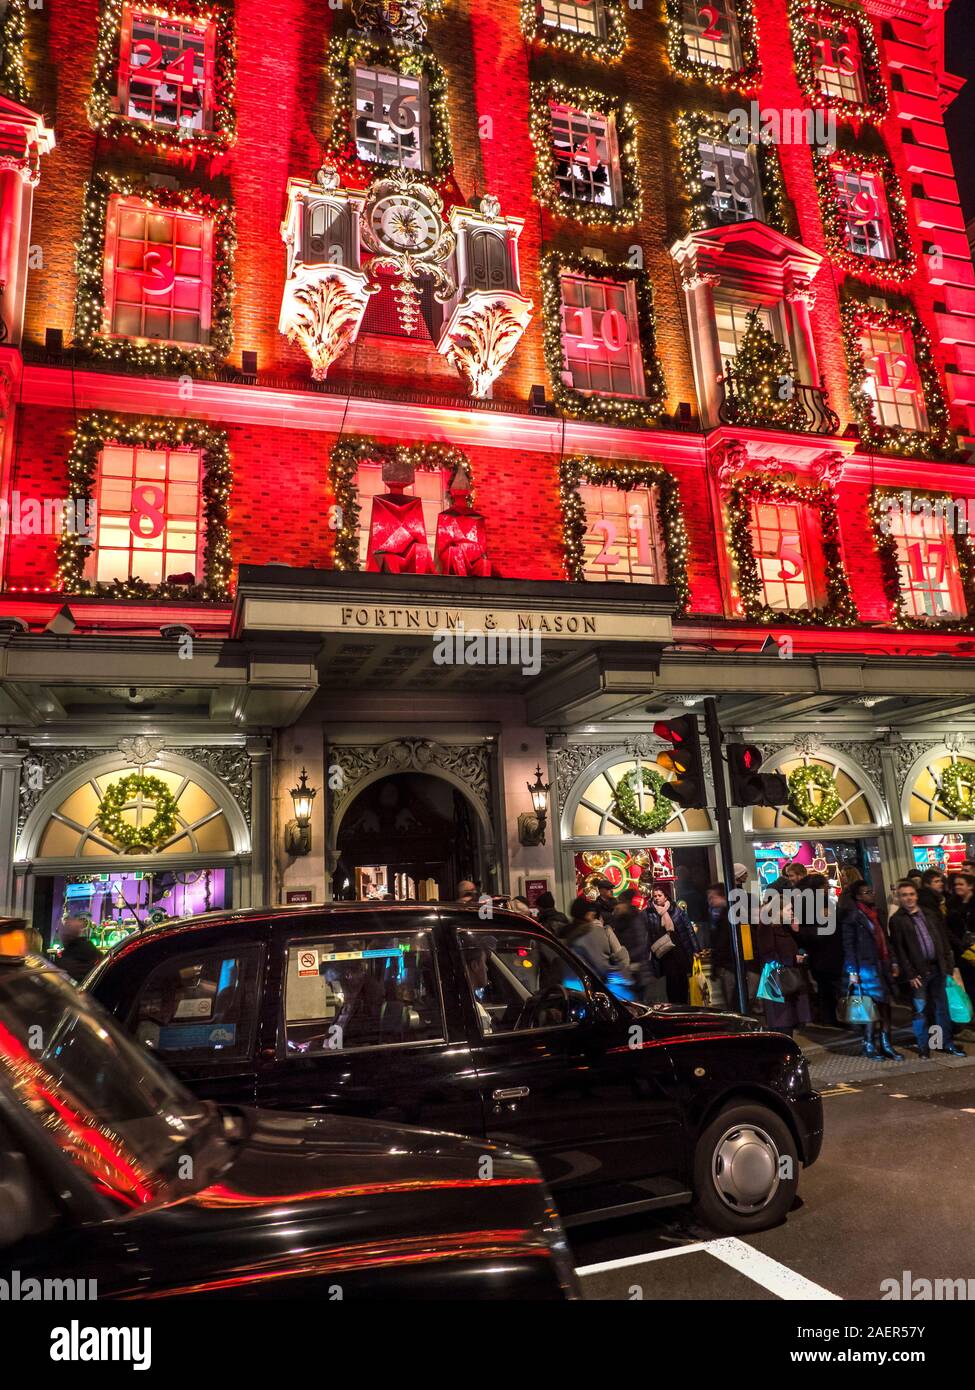 Natale Fortnum & Mason department store della facciata, con un rosso Calendario dell'Avvento tema di notte molto occupati con gli acquirenti di Natale, London Black Taxi in primo piano Piccadilly London REGNO UNITO 2019 Foto Stock